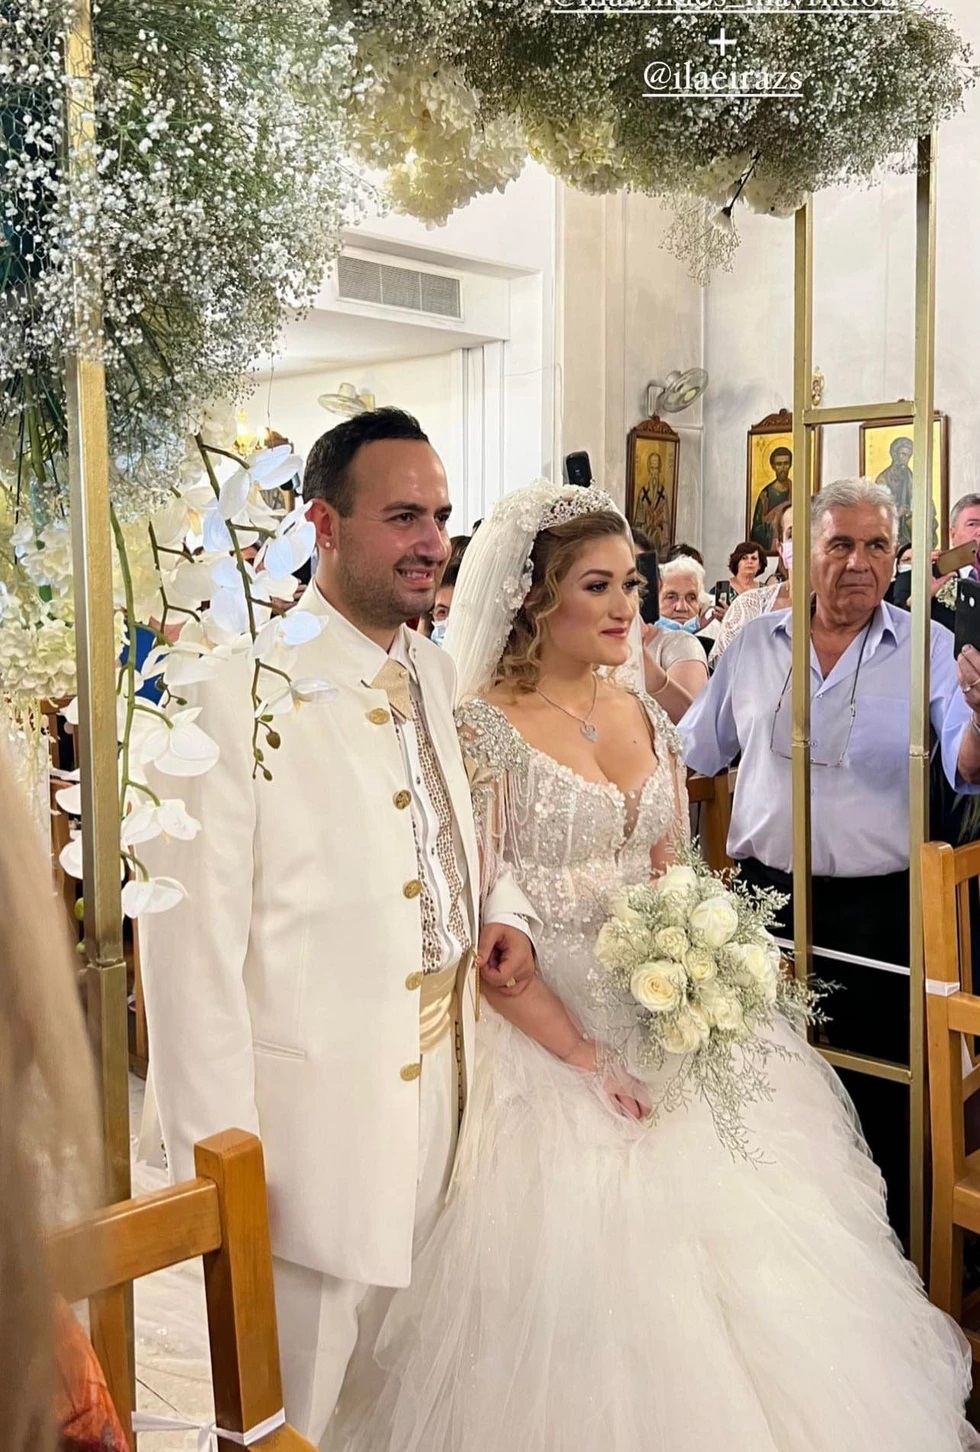 Παντρεύτηκαν Μαυρίκιος Μαυρικίου- Ιλάειρα Ζήση: Εκθαμβωτική η νύφη σε έναν γάμο υπερπαραγωγή! (εικόνες)